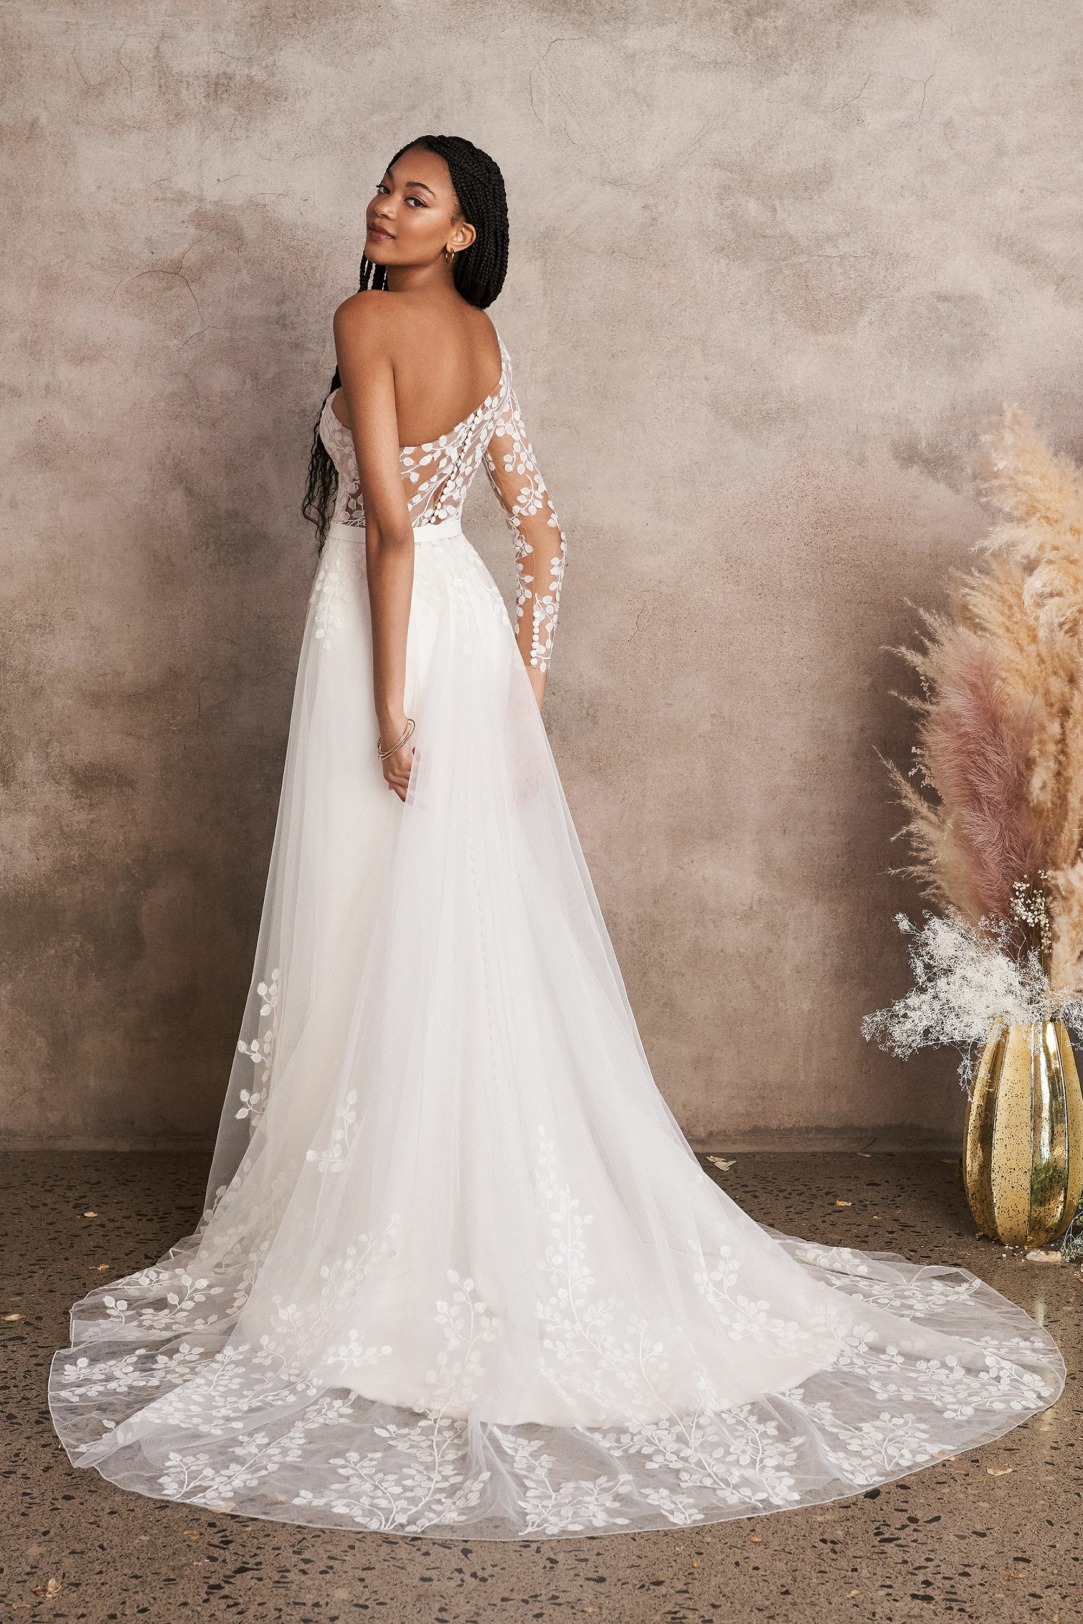 Hochzeitskleider Brautkleider im Fit'n Flare Stil Modell 66223sk ein absoluter Hingucker ist dieses Oneshoulder Kleid mit abnehmbarem Tüllrock traumhafte Spitze in höchster Qualität